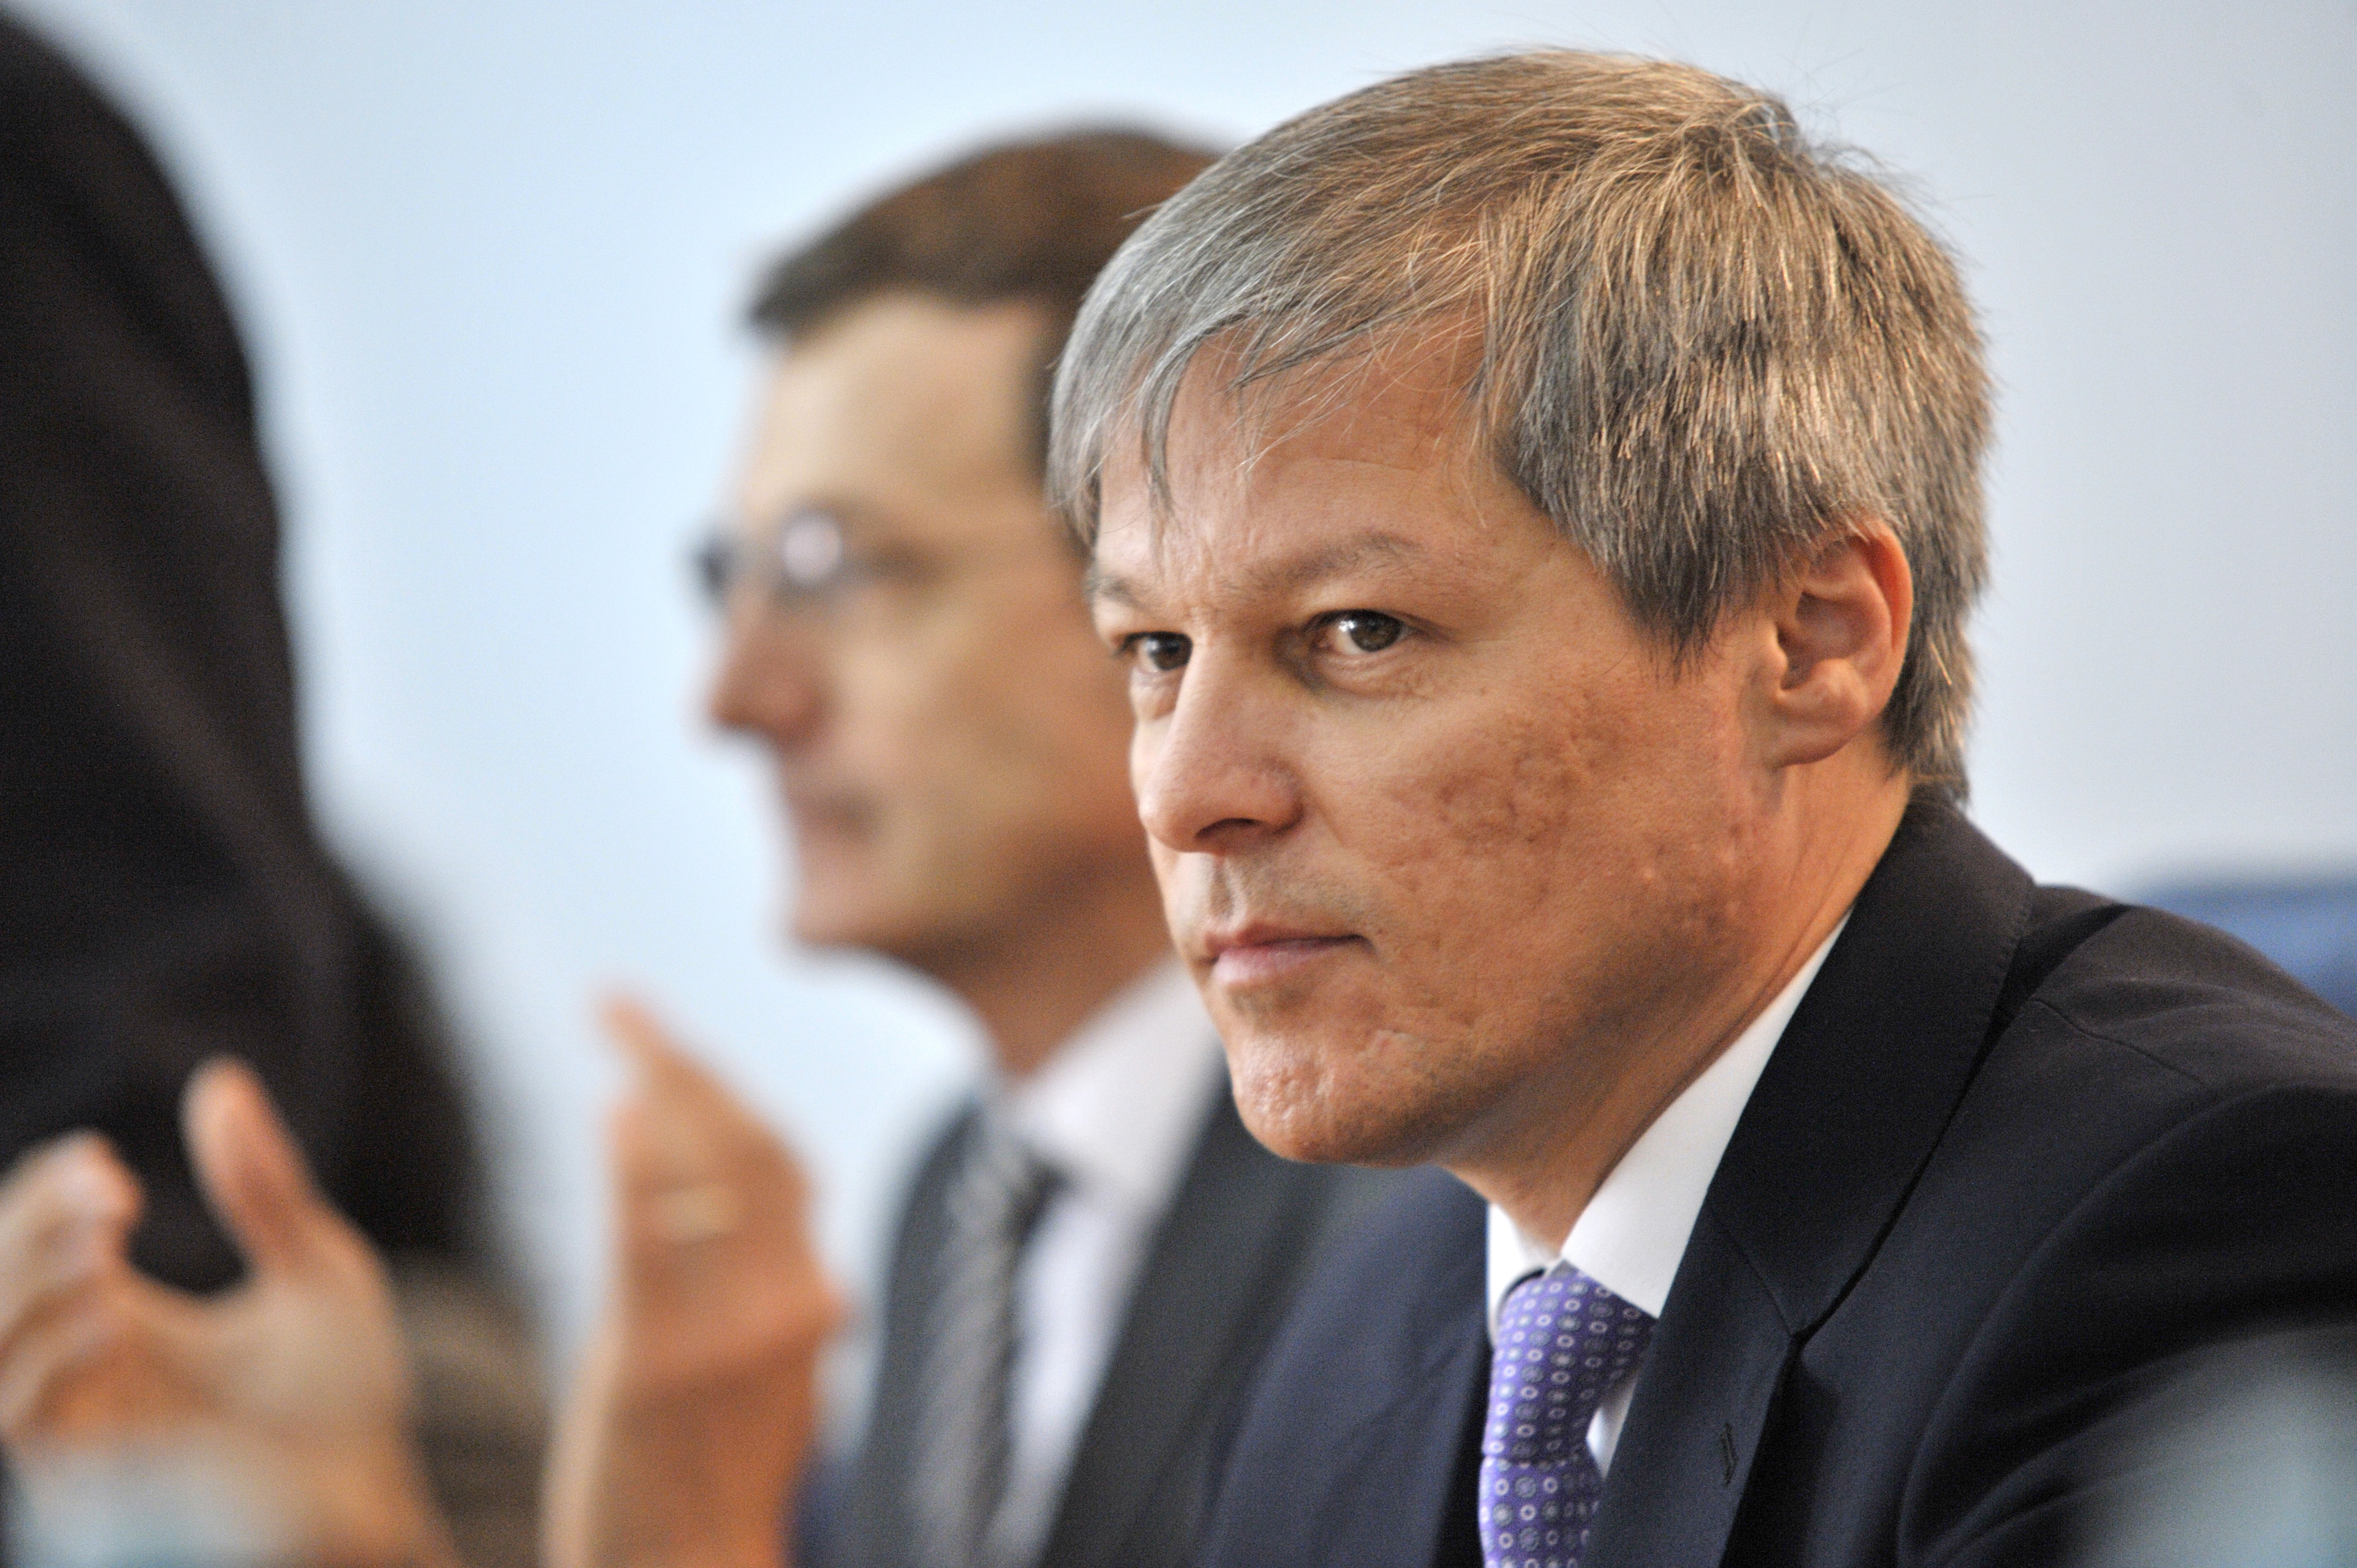 Reacţia lui Cioloş după ce a căzut Guvernul: Îi cerem lui Klaus Iohannis să convoace consultări cu toate forţele politice responsabile